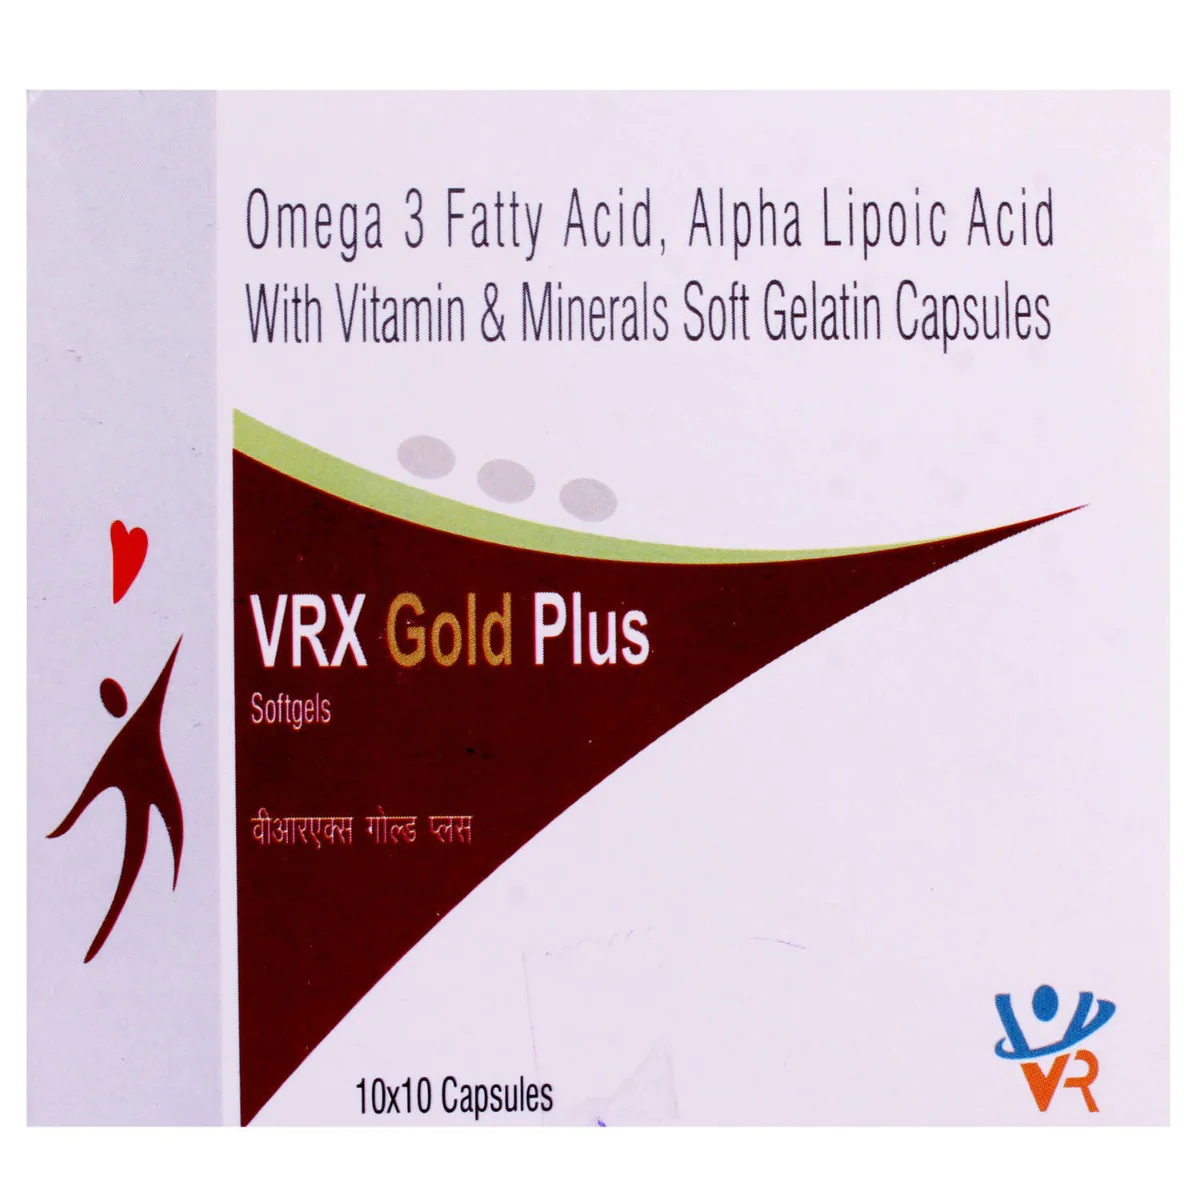 VRX Gold Plus Soft Gelatin Capsule